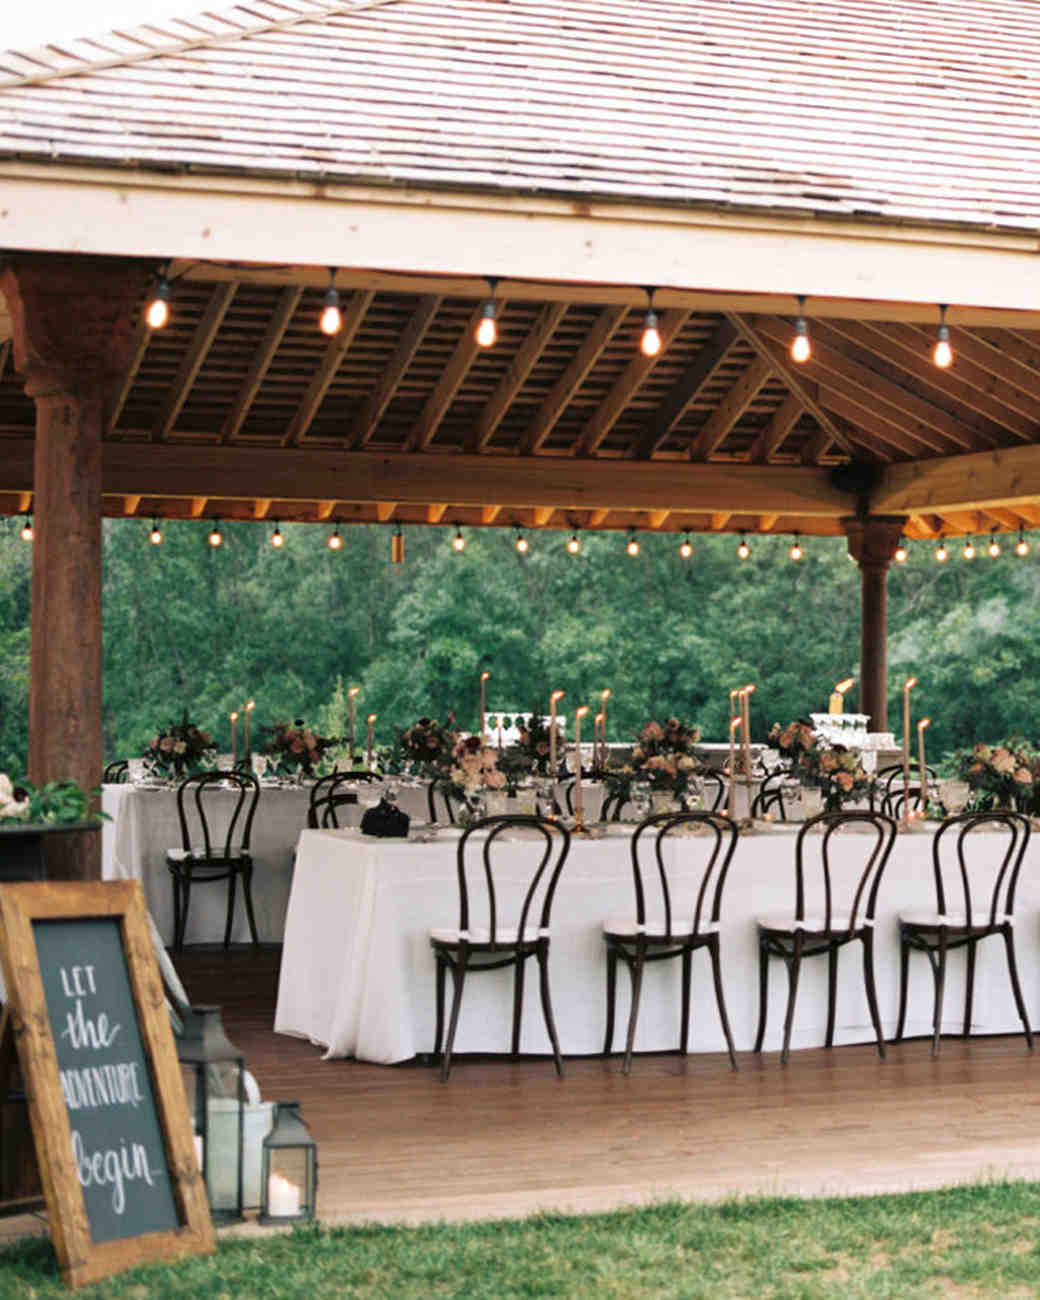 The Most Amazing Airbnb Wedding Venues Martha Stewart Weddings